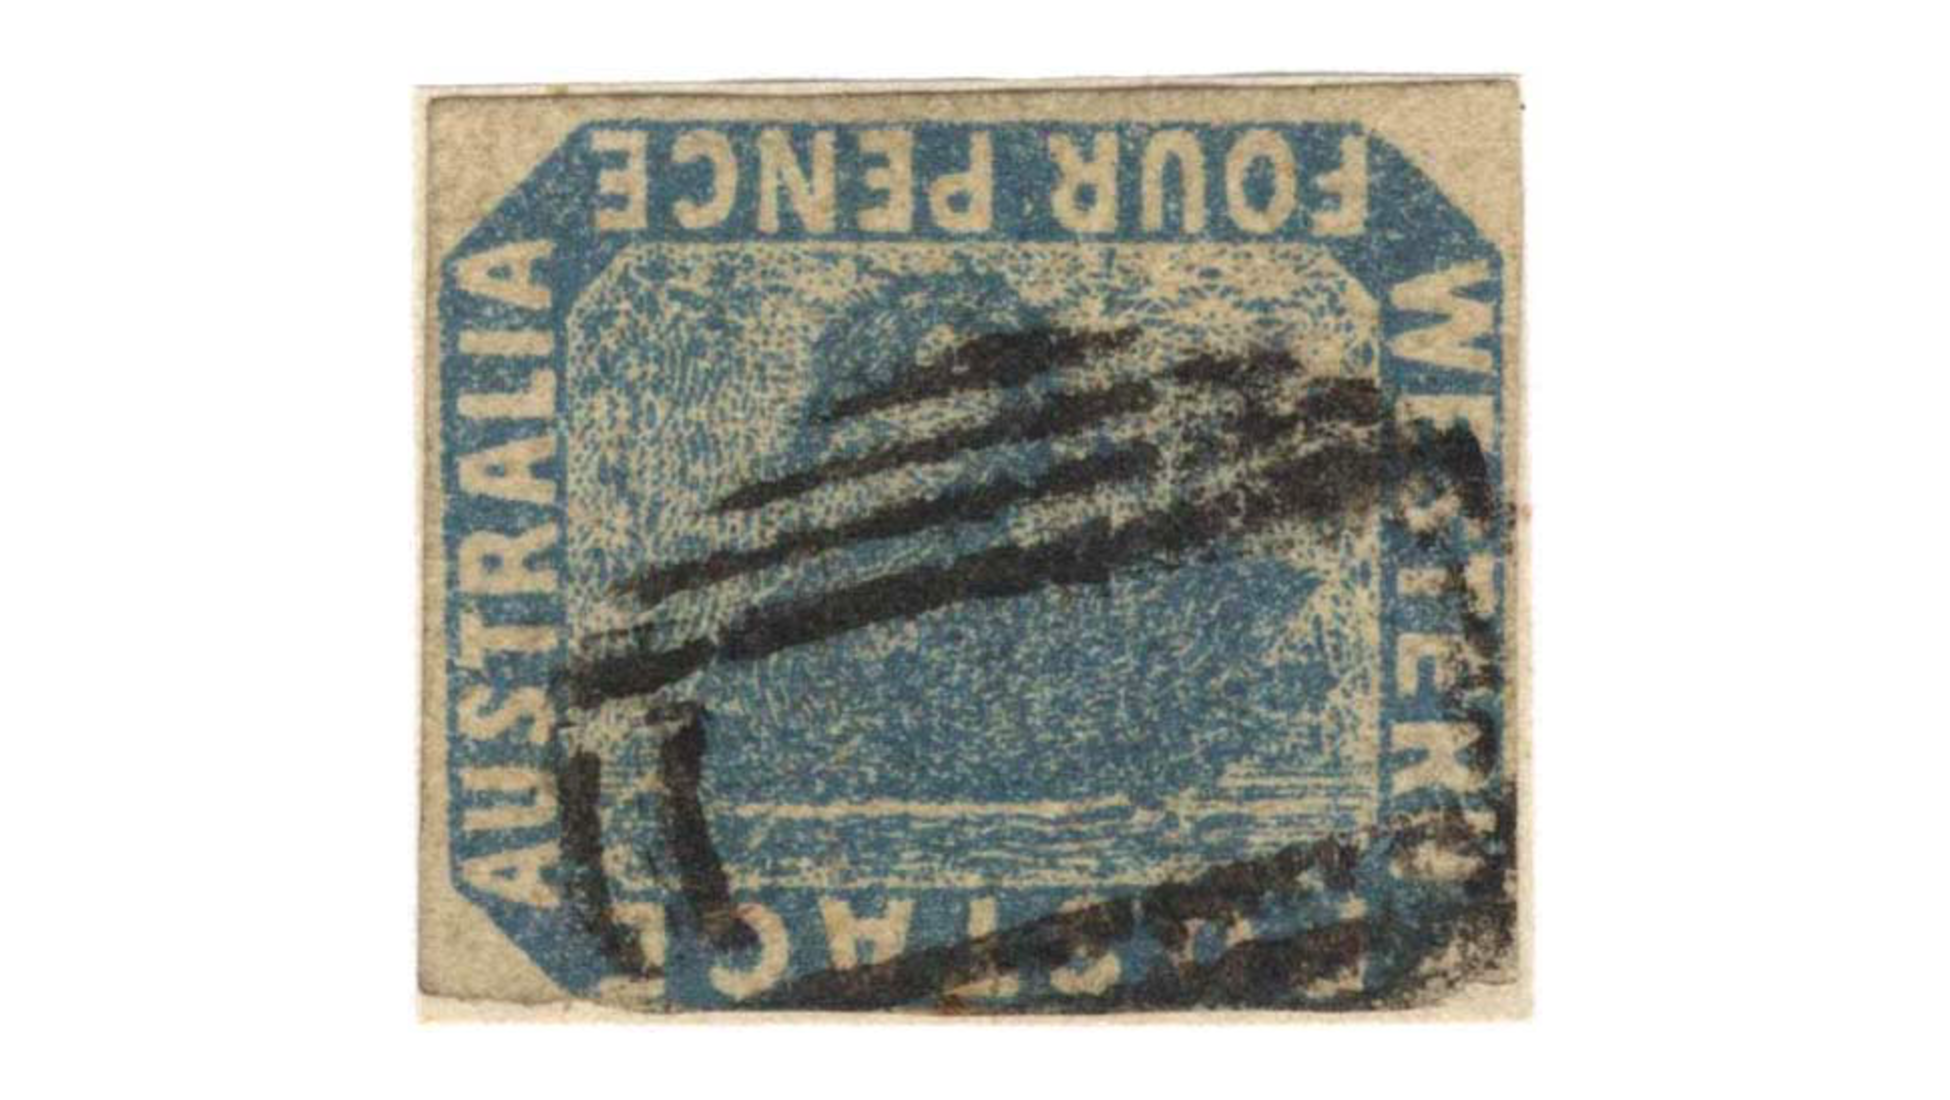 Rare british stamps value